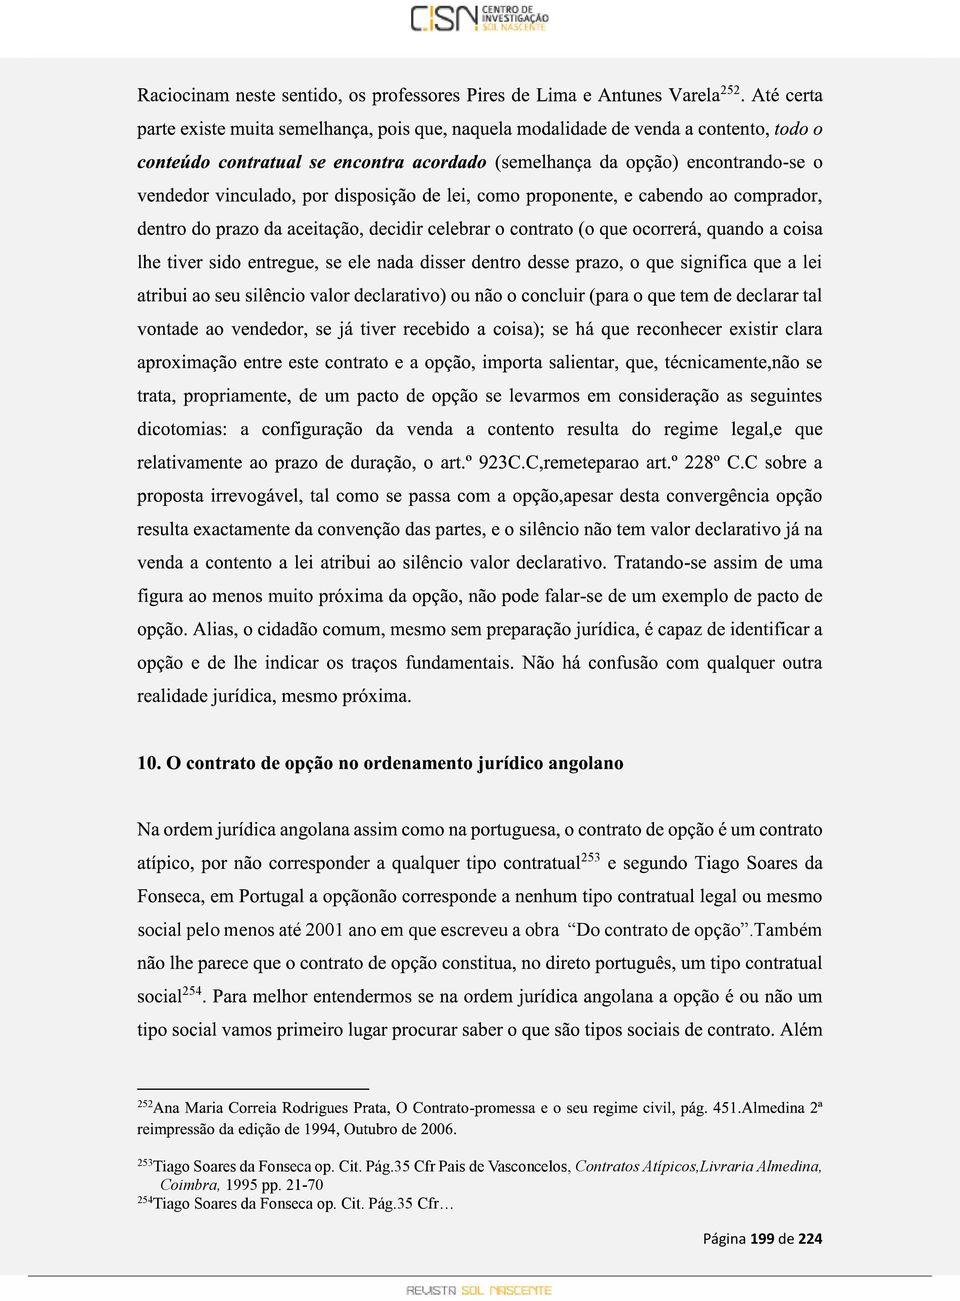 35 Cfr Pais de Vasconcelos, Contratos Atípicos,Livraria Almedina,